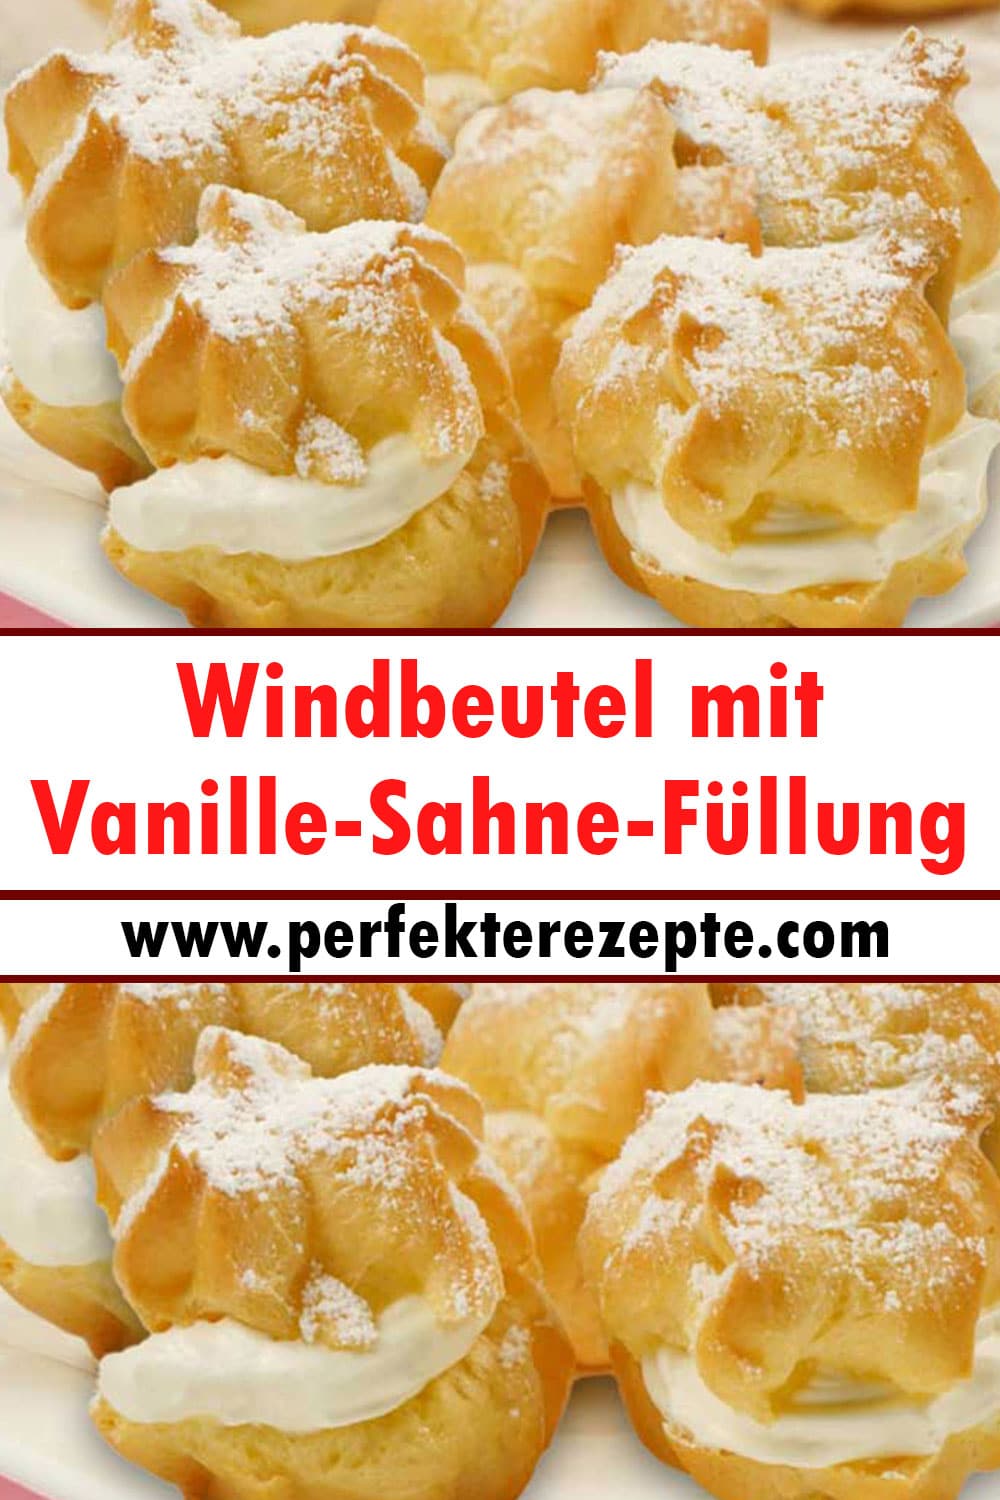 Klassische Windbeutel mit Vanille-Sahne-Füllung Rezept